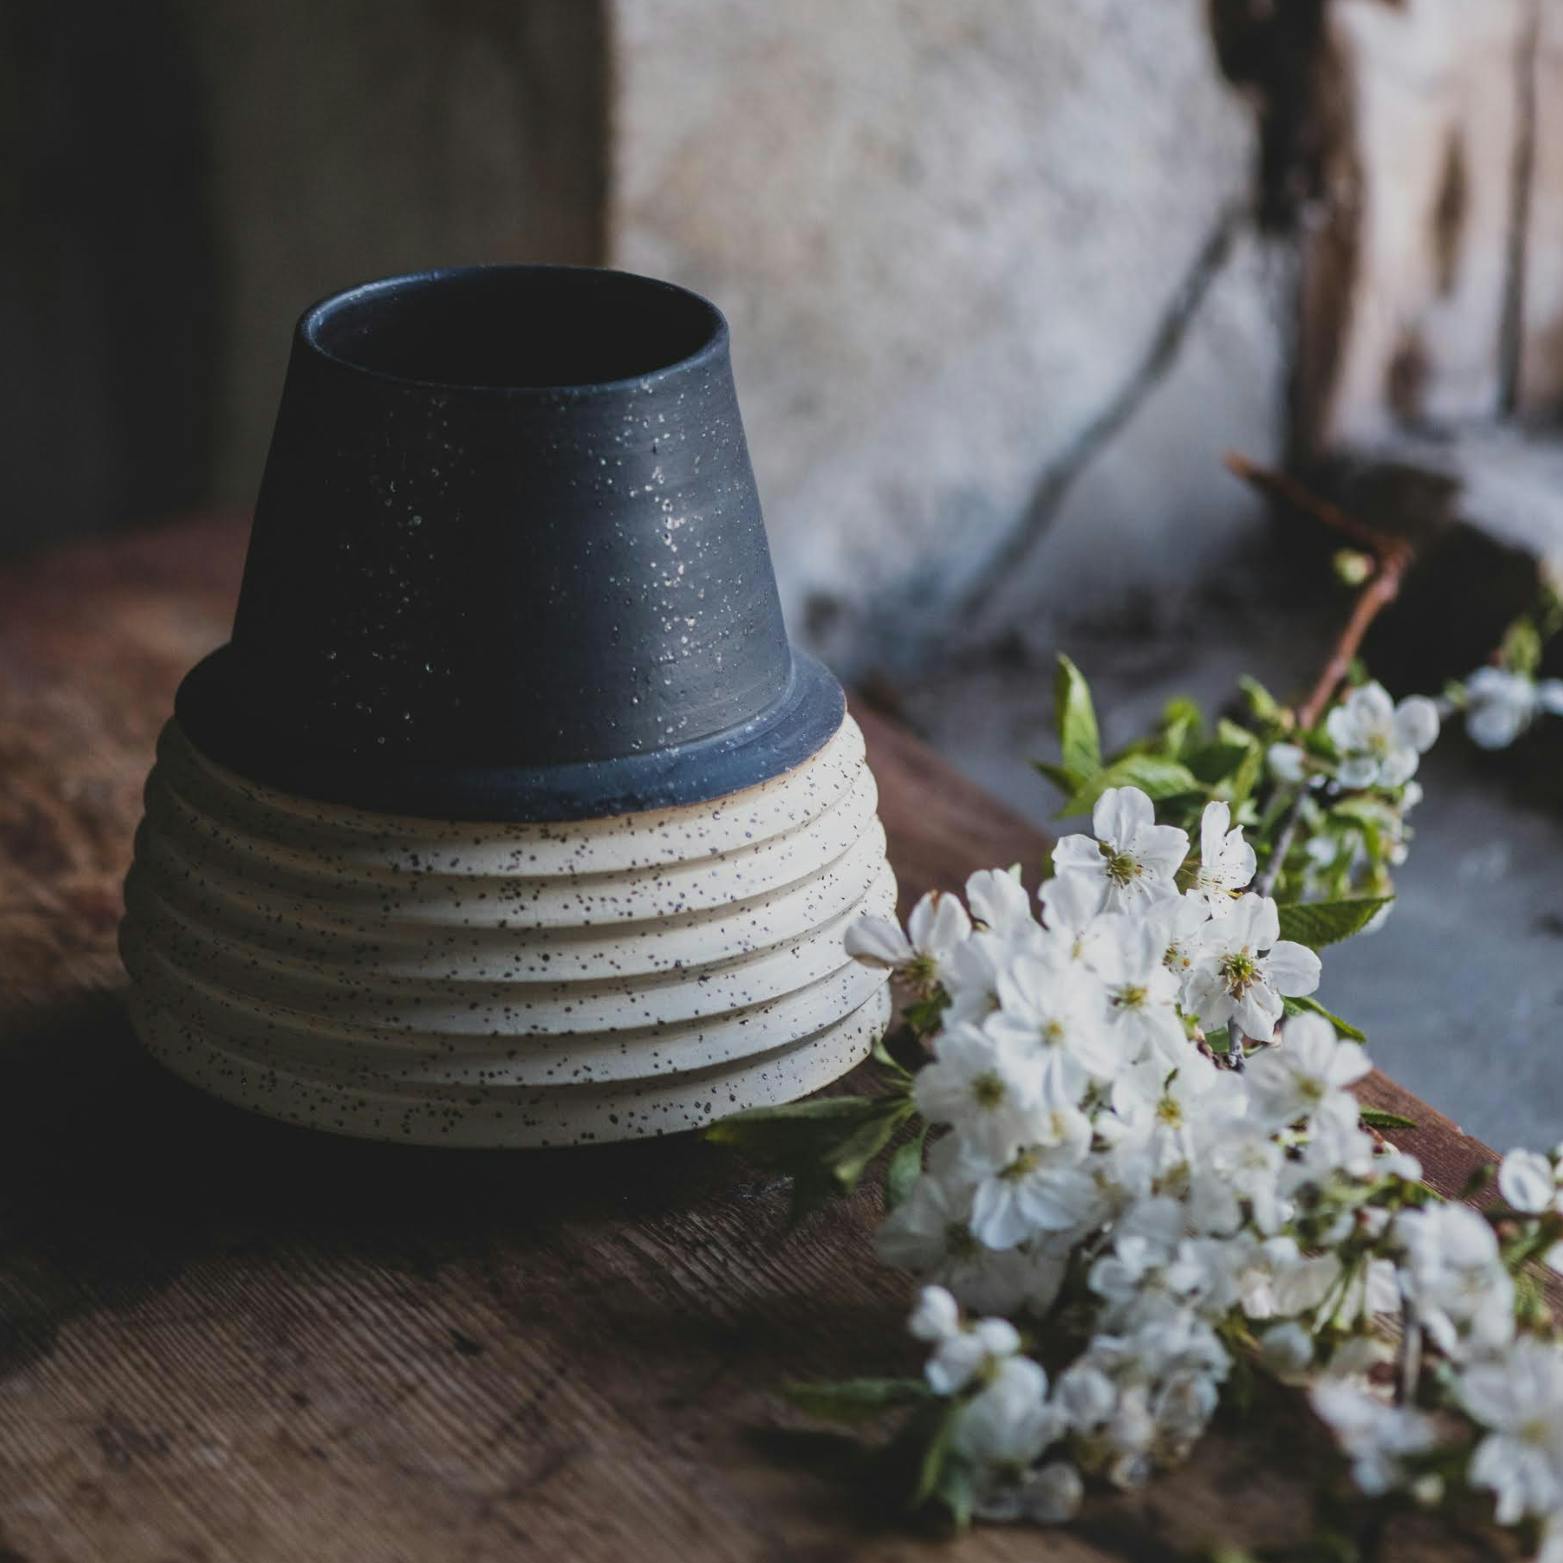 Unik vas från Lervis keramikverkstad